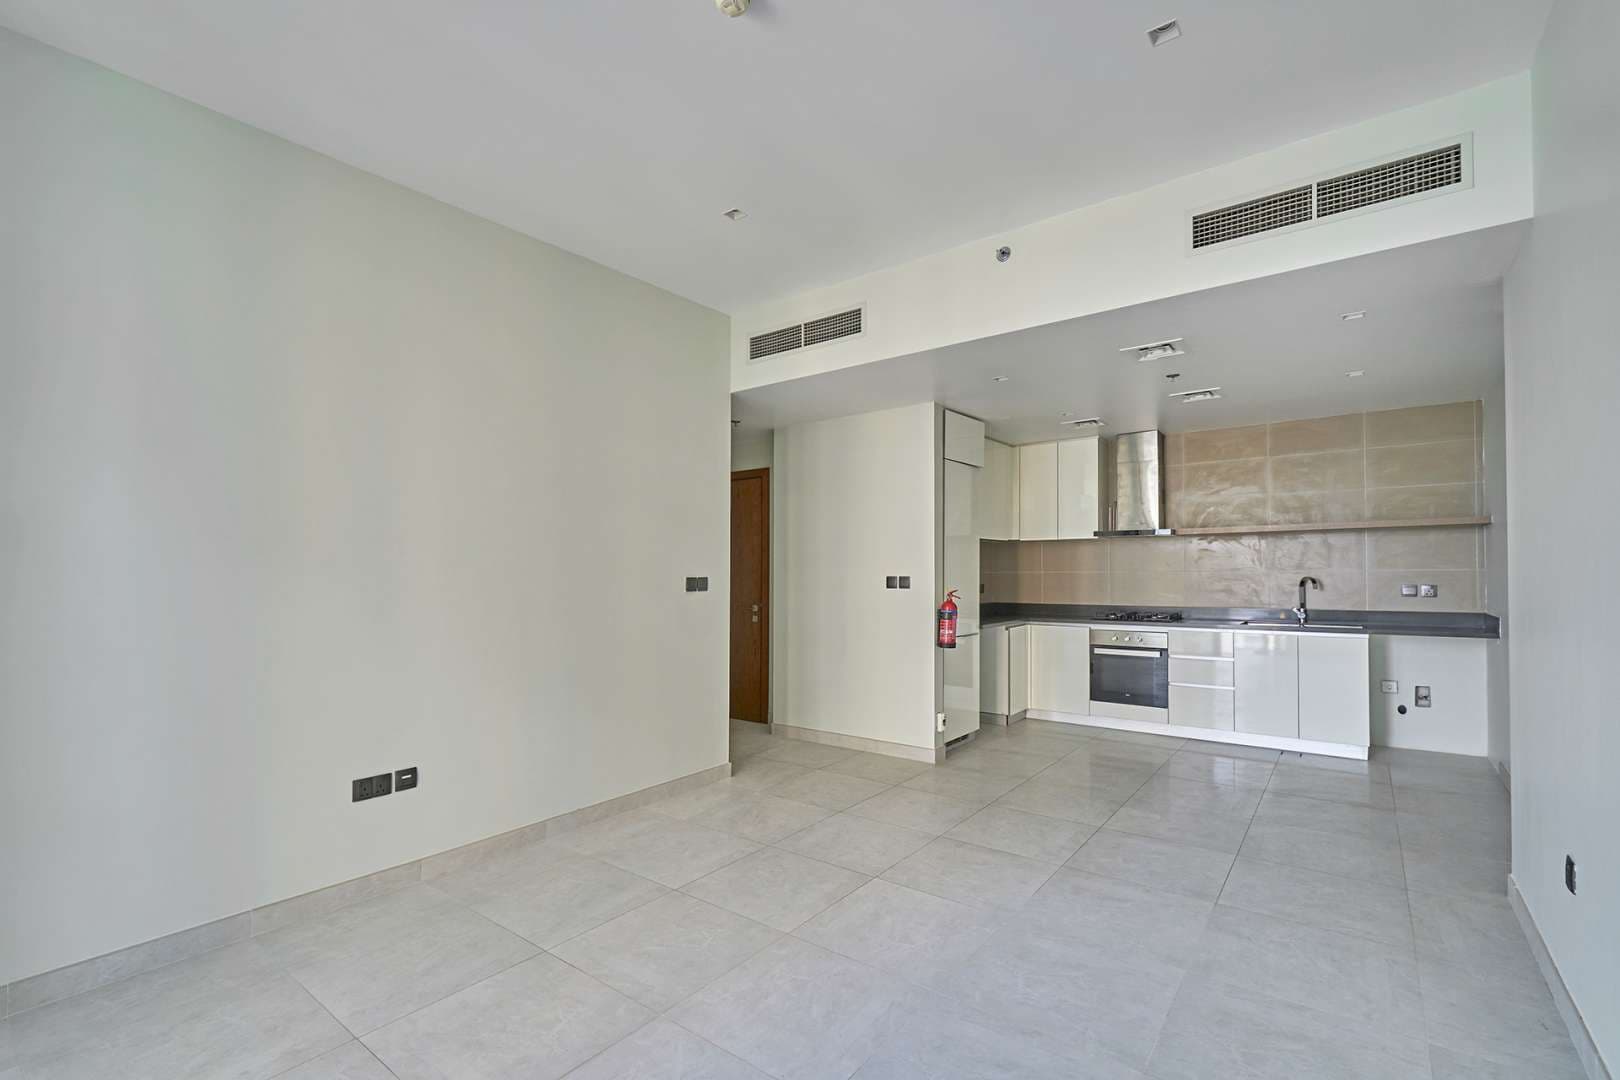 2 Bedroom Apartment For Rent No 9 Lp05798 1bf951d1c02e4500.jpg